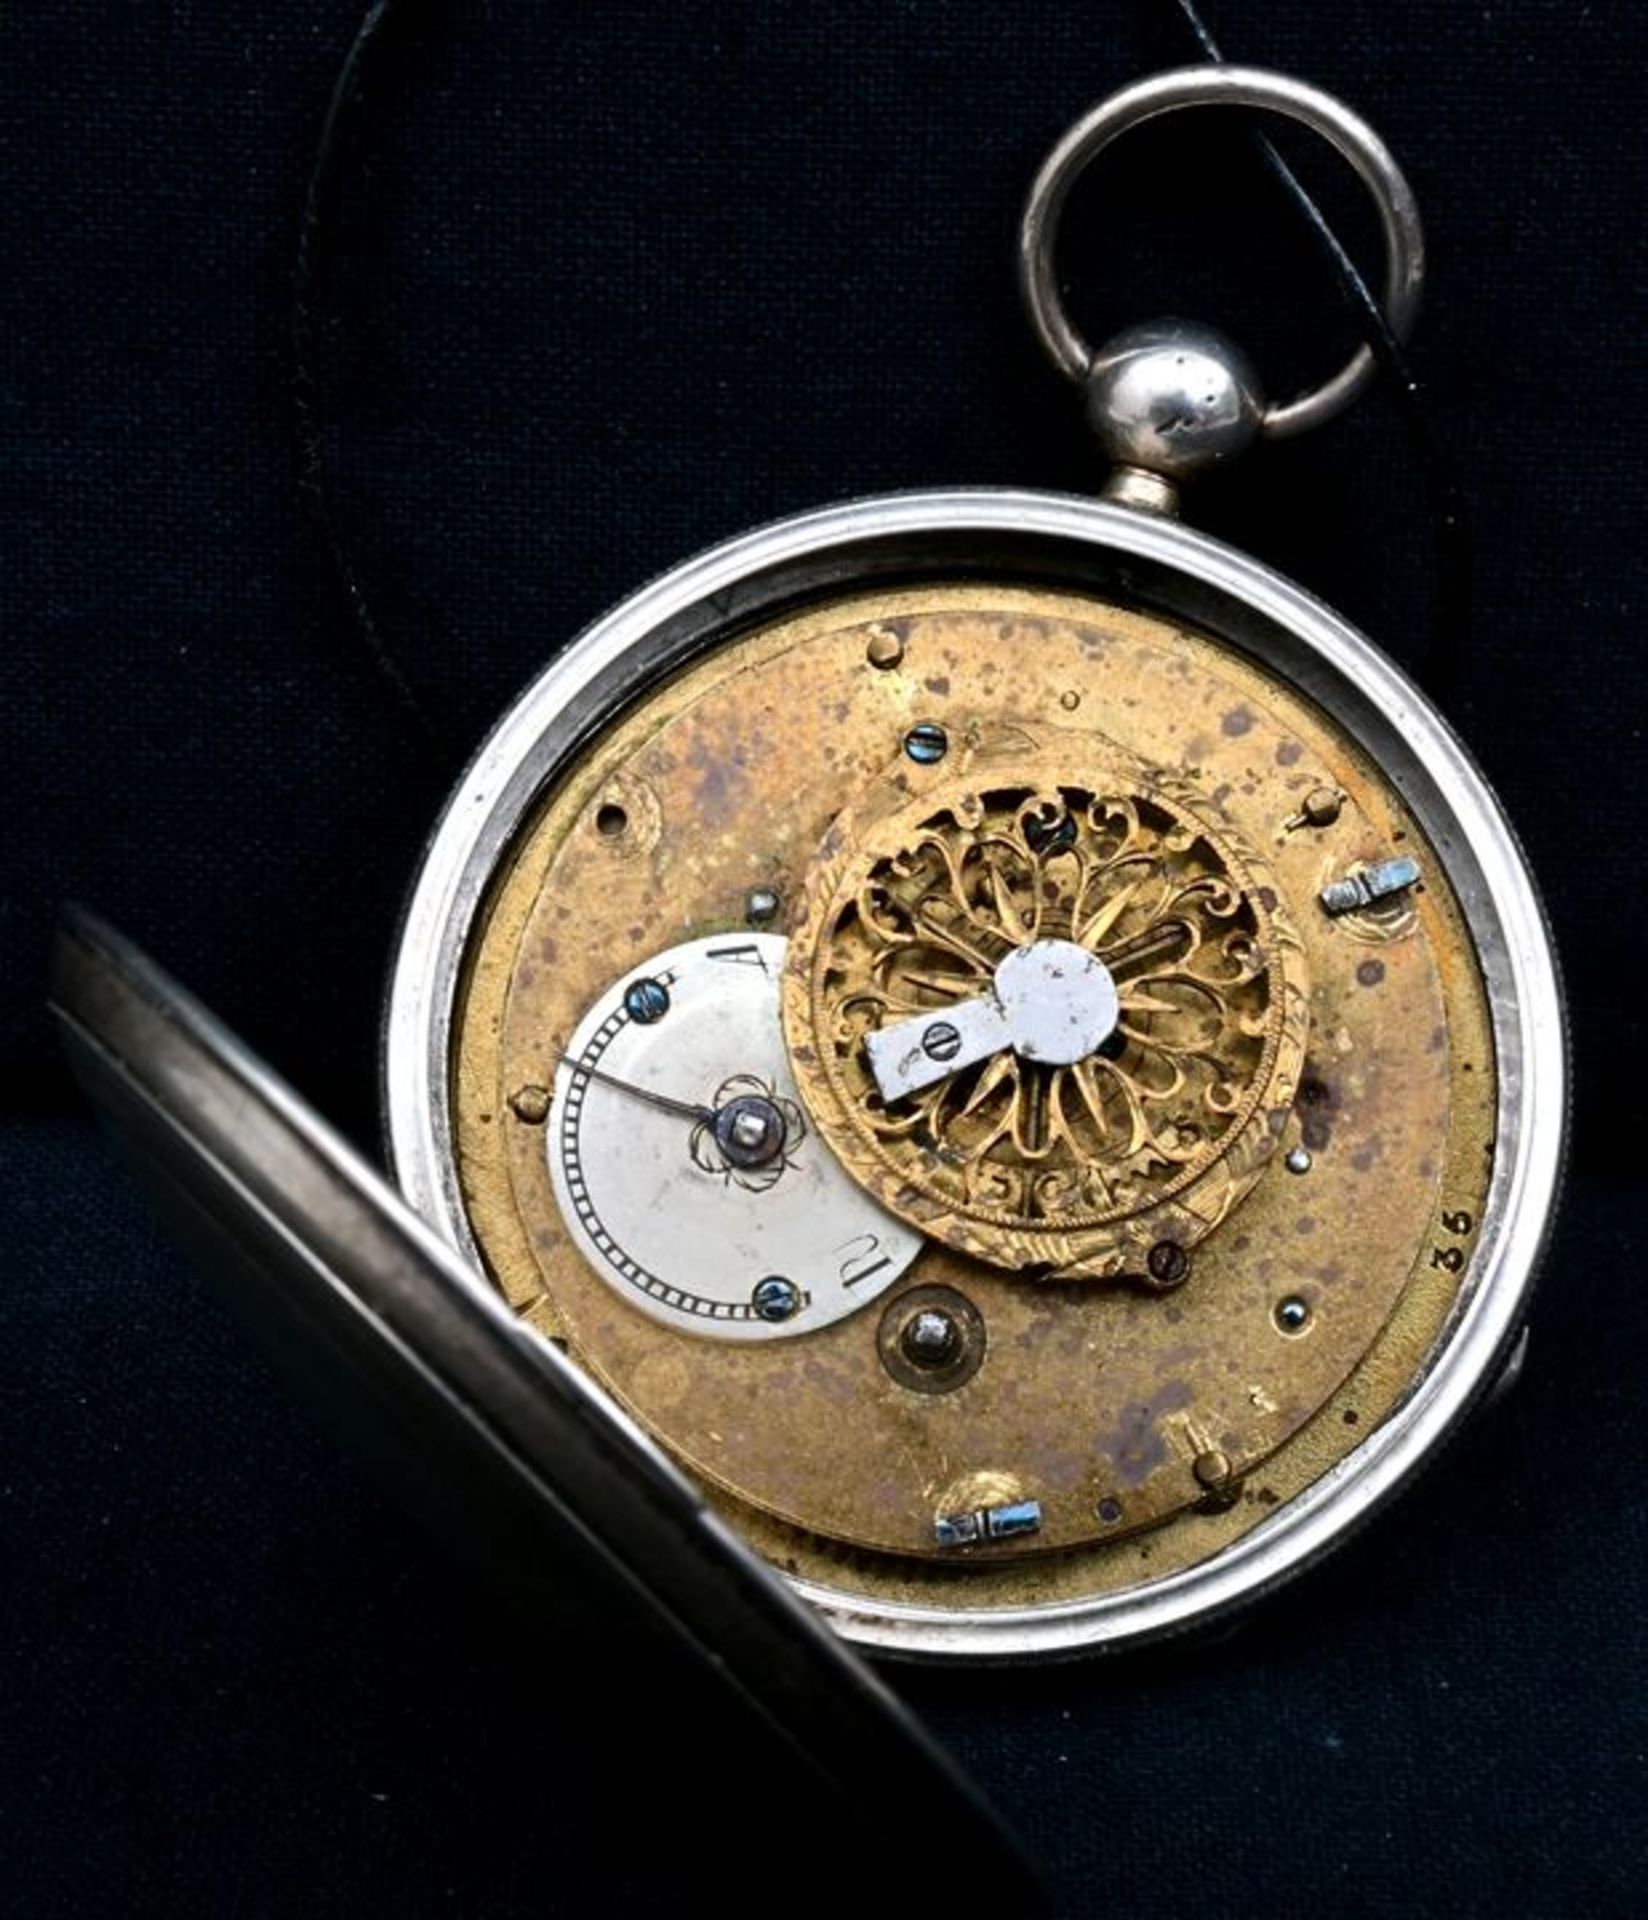 Spindeltaschenuhr / Verge pocket watch - Image 3 of 3